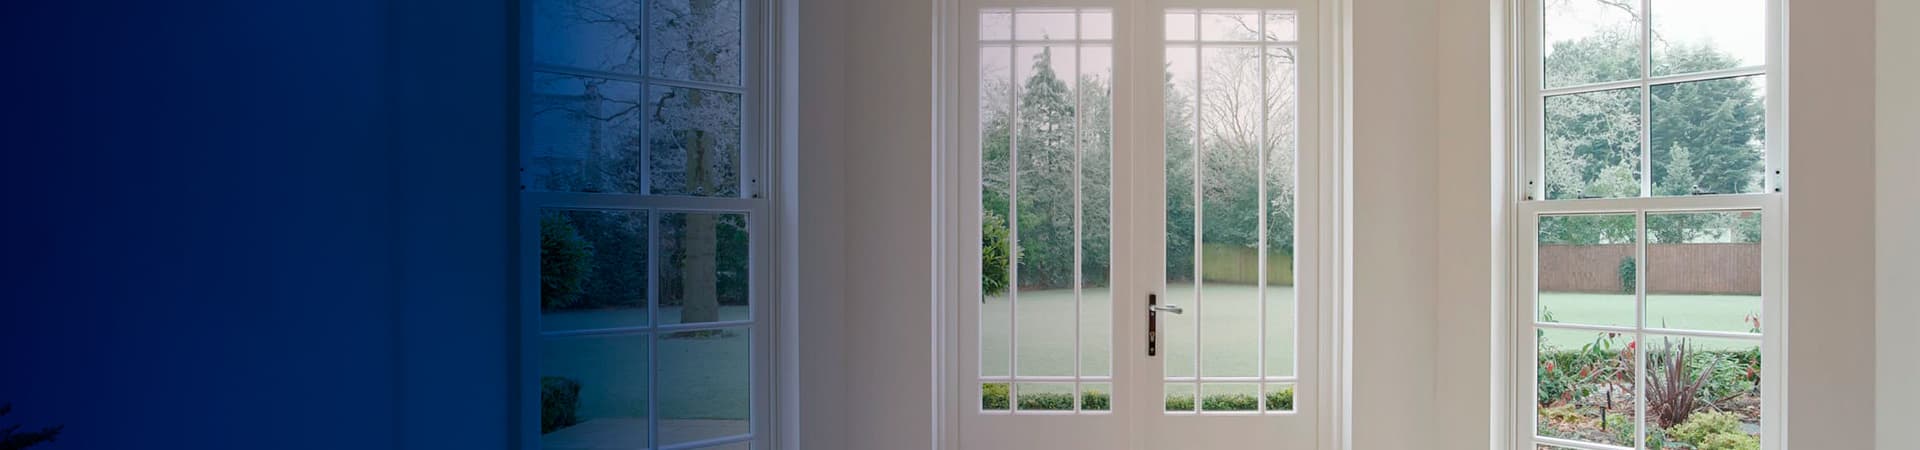 Imagen de ventanas a medida con descuento instaladas en una casa.